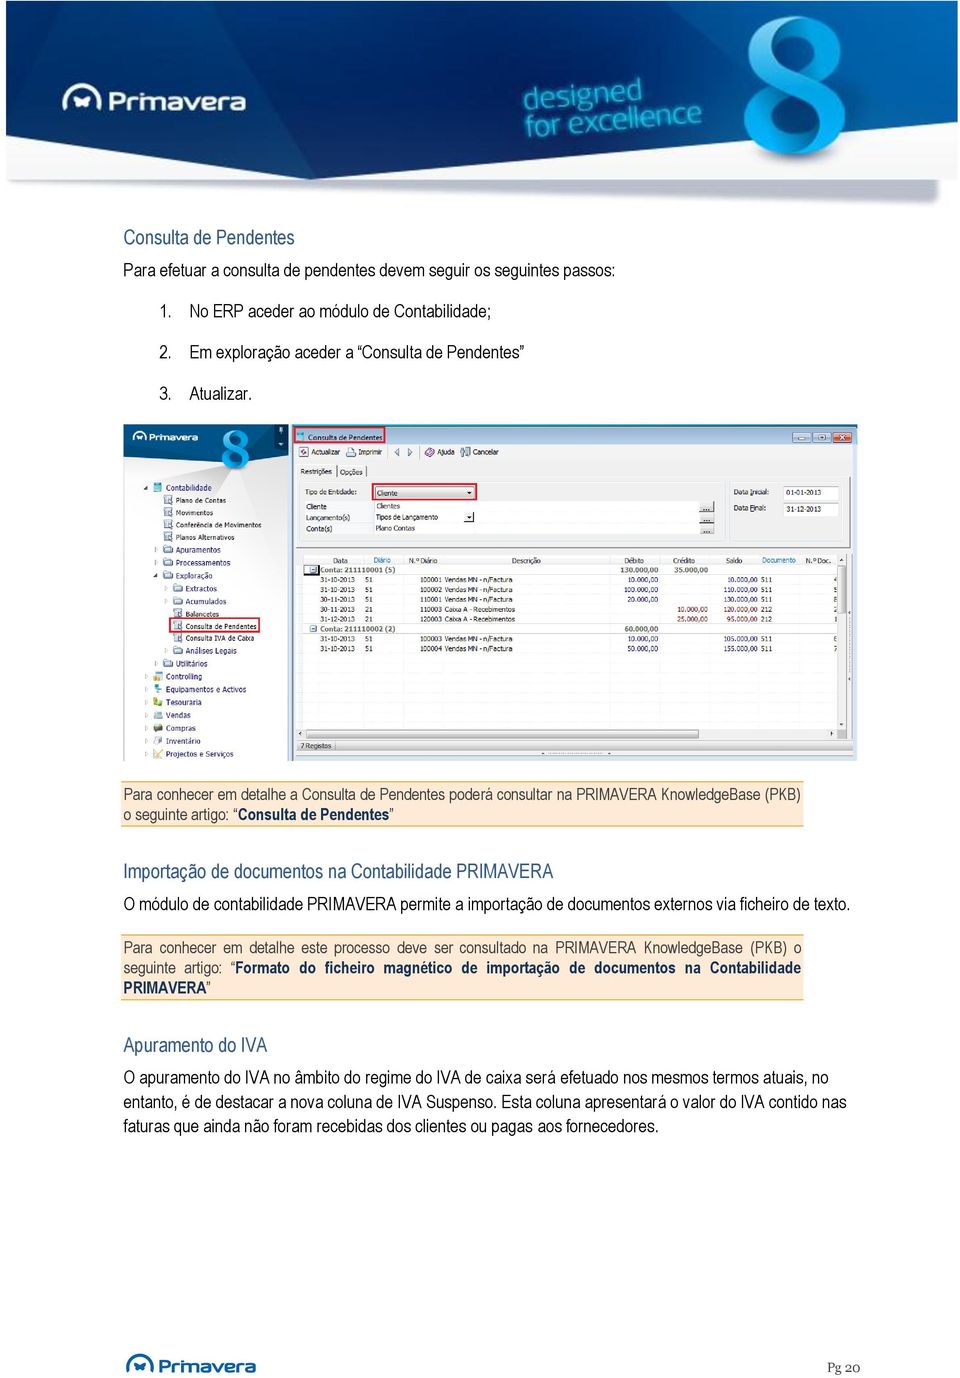 módulo de contabilidade PRIMAVERA permite a importação de documentos externos via ficheiro de texto.